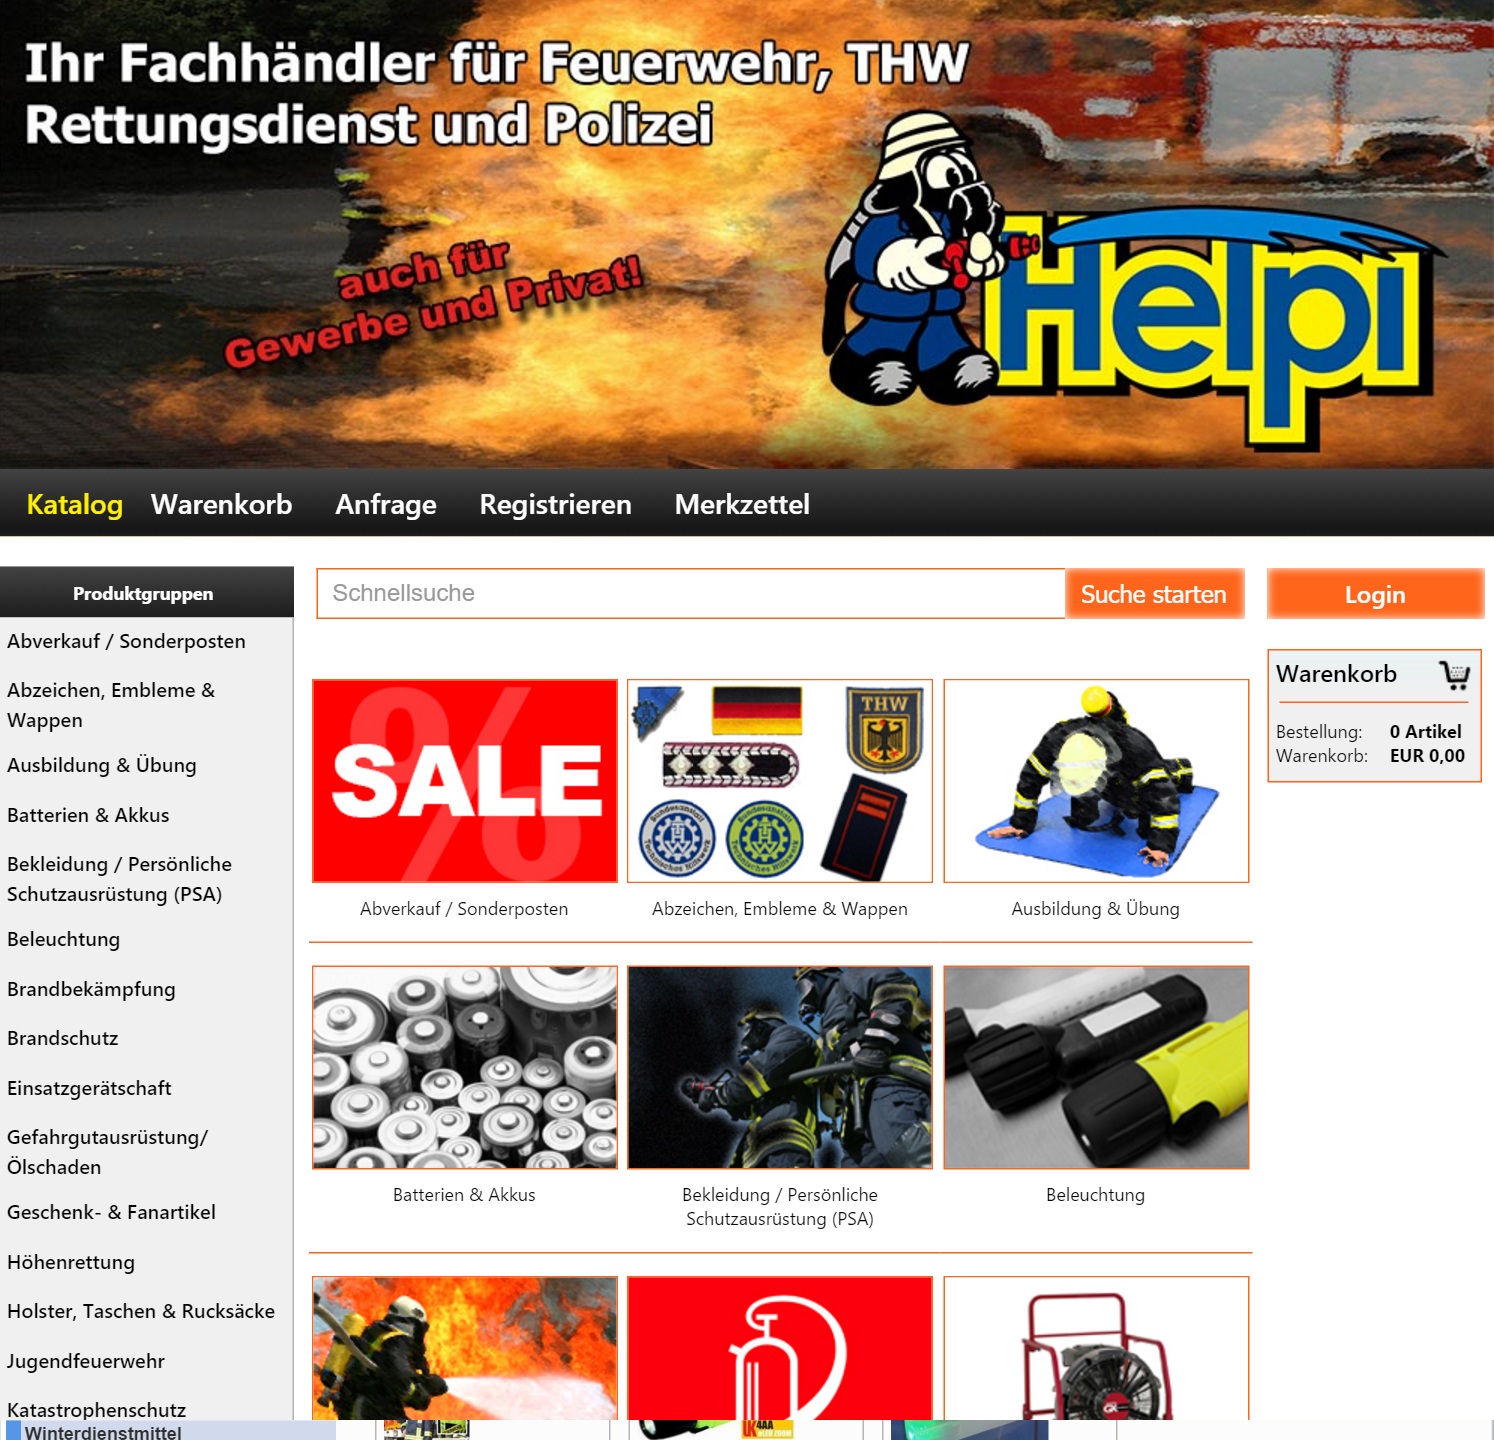 3D FEUERWEHRSIGNET ALS AUTOAUFKLEBER - Feuerwehr - Helpi-Shop - Der  Feuerwehrshop